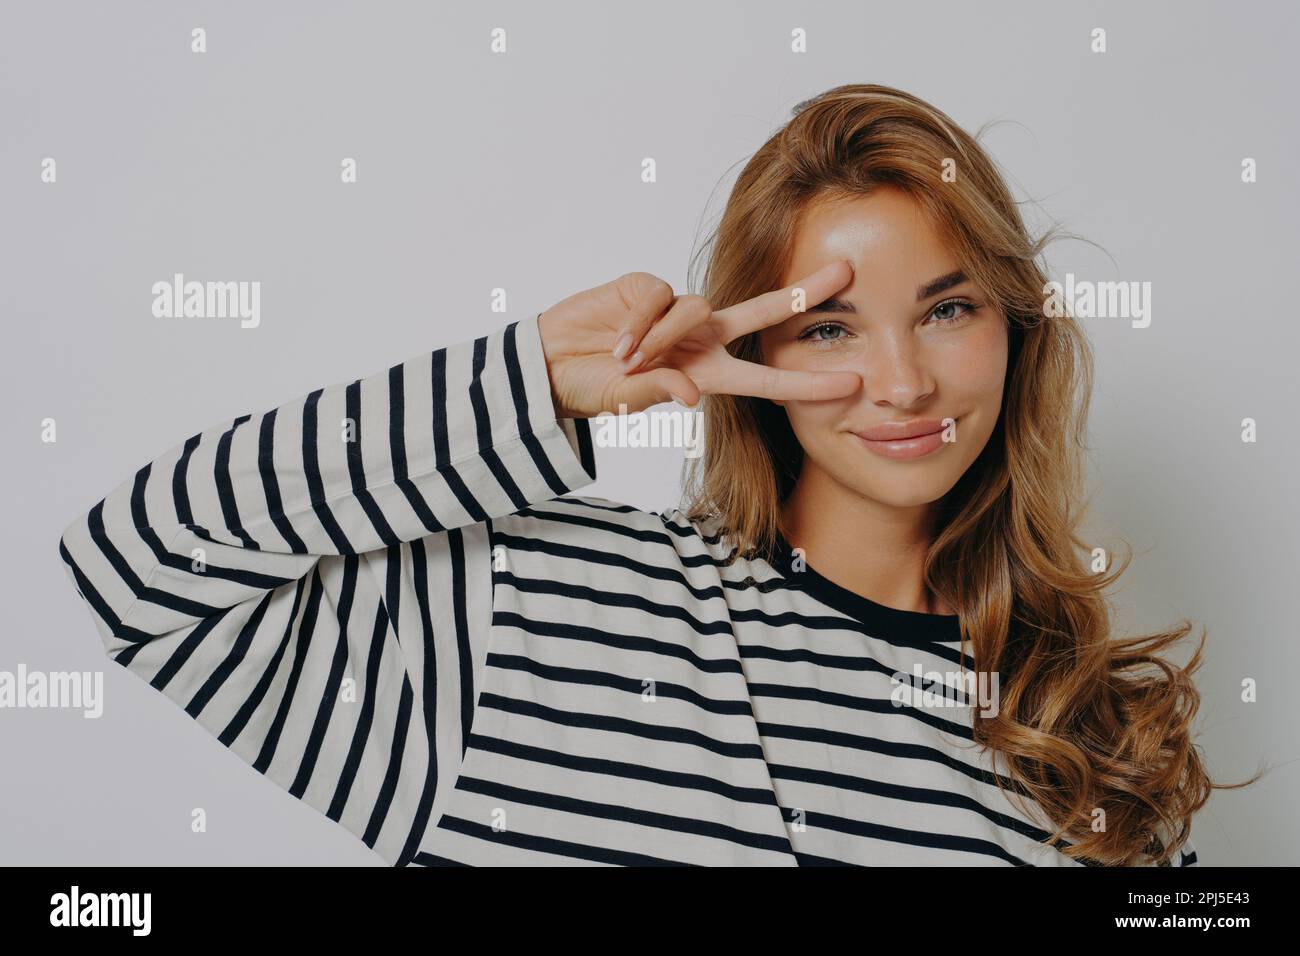 Glückliche junge europäische Frau macht Friedensdisco-Geste über Auge V-Schild trägt lässigen gestreiften Pullover minimales Make-up steht drinnen gegen graue Rückseite des Studios Stockfoto